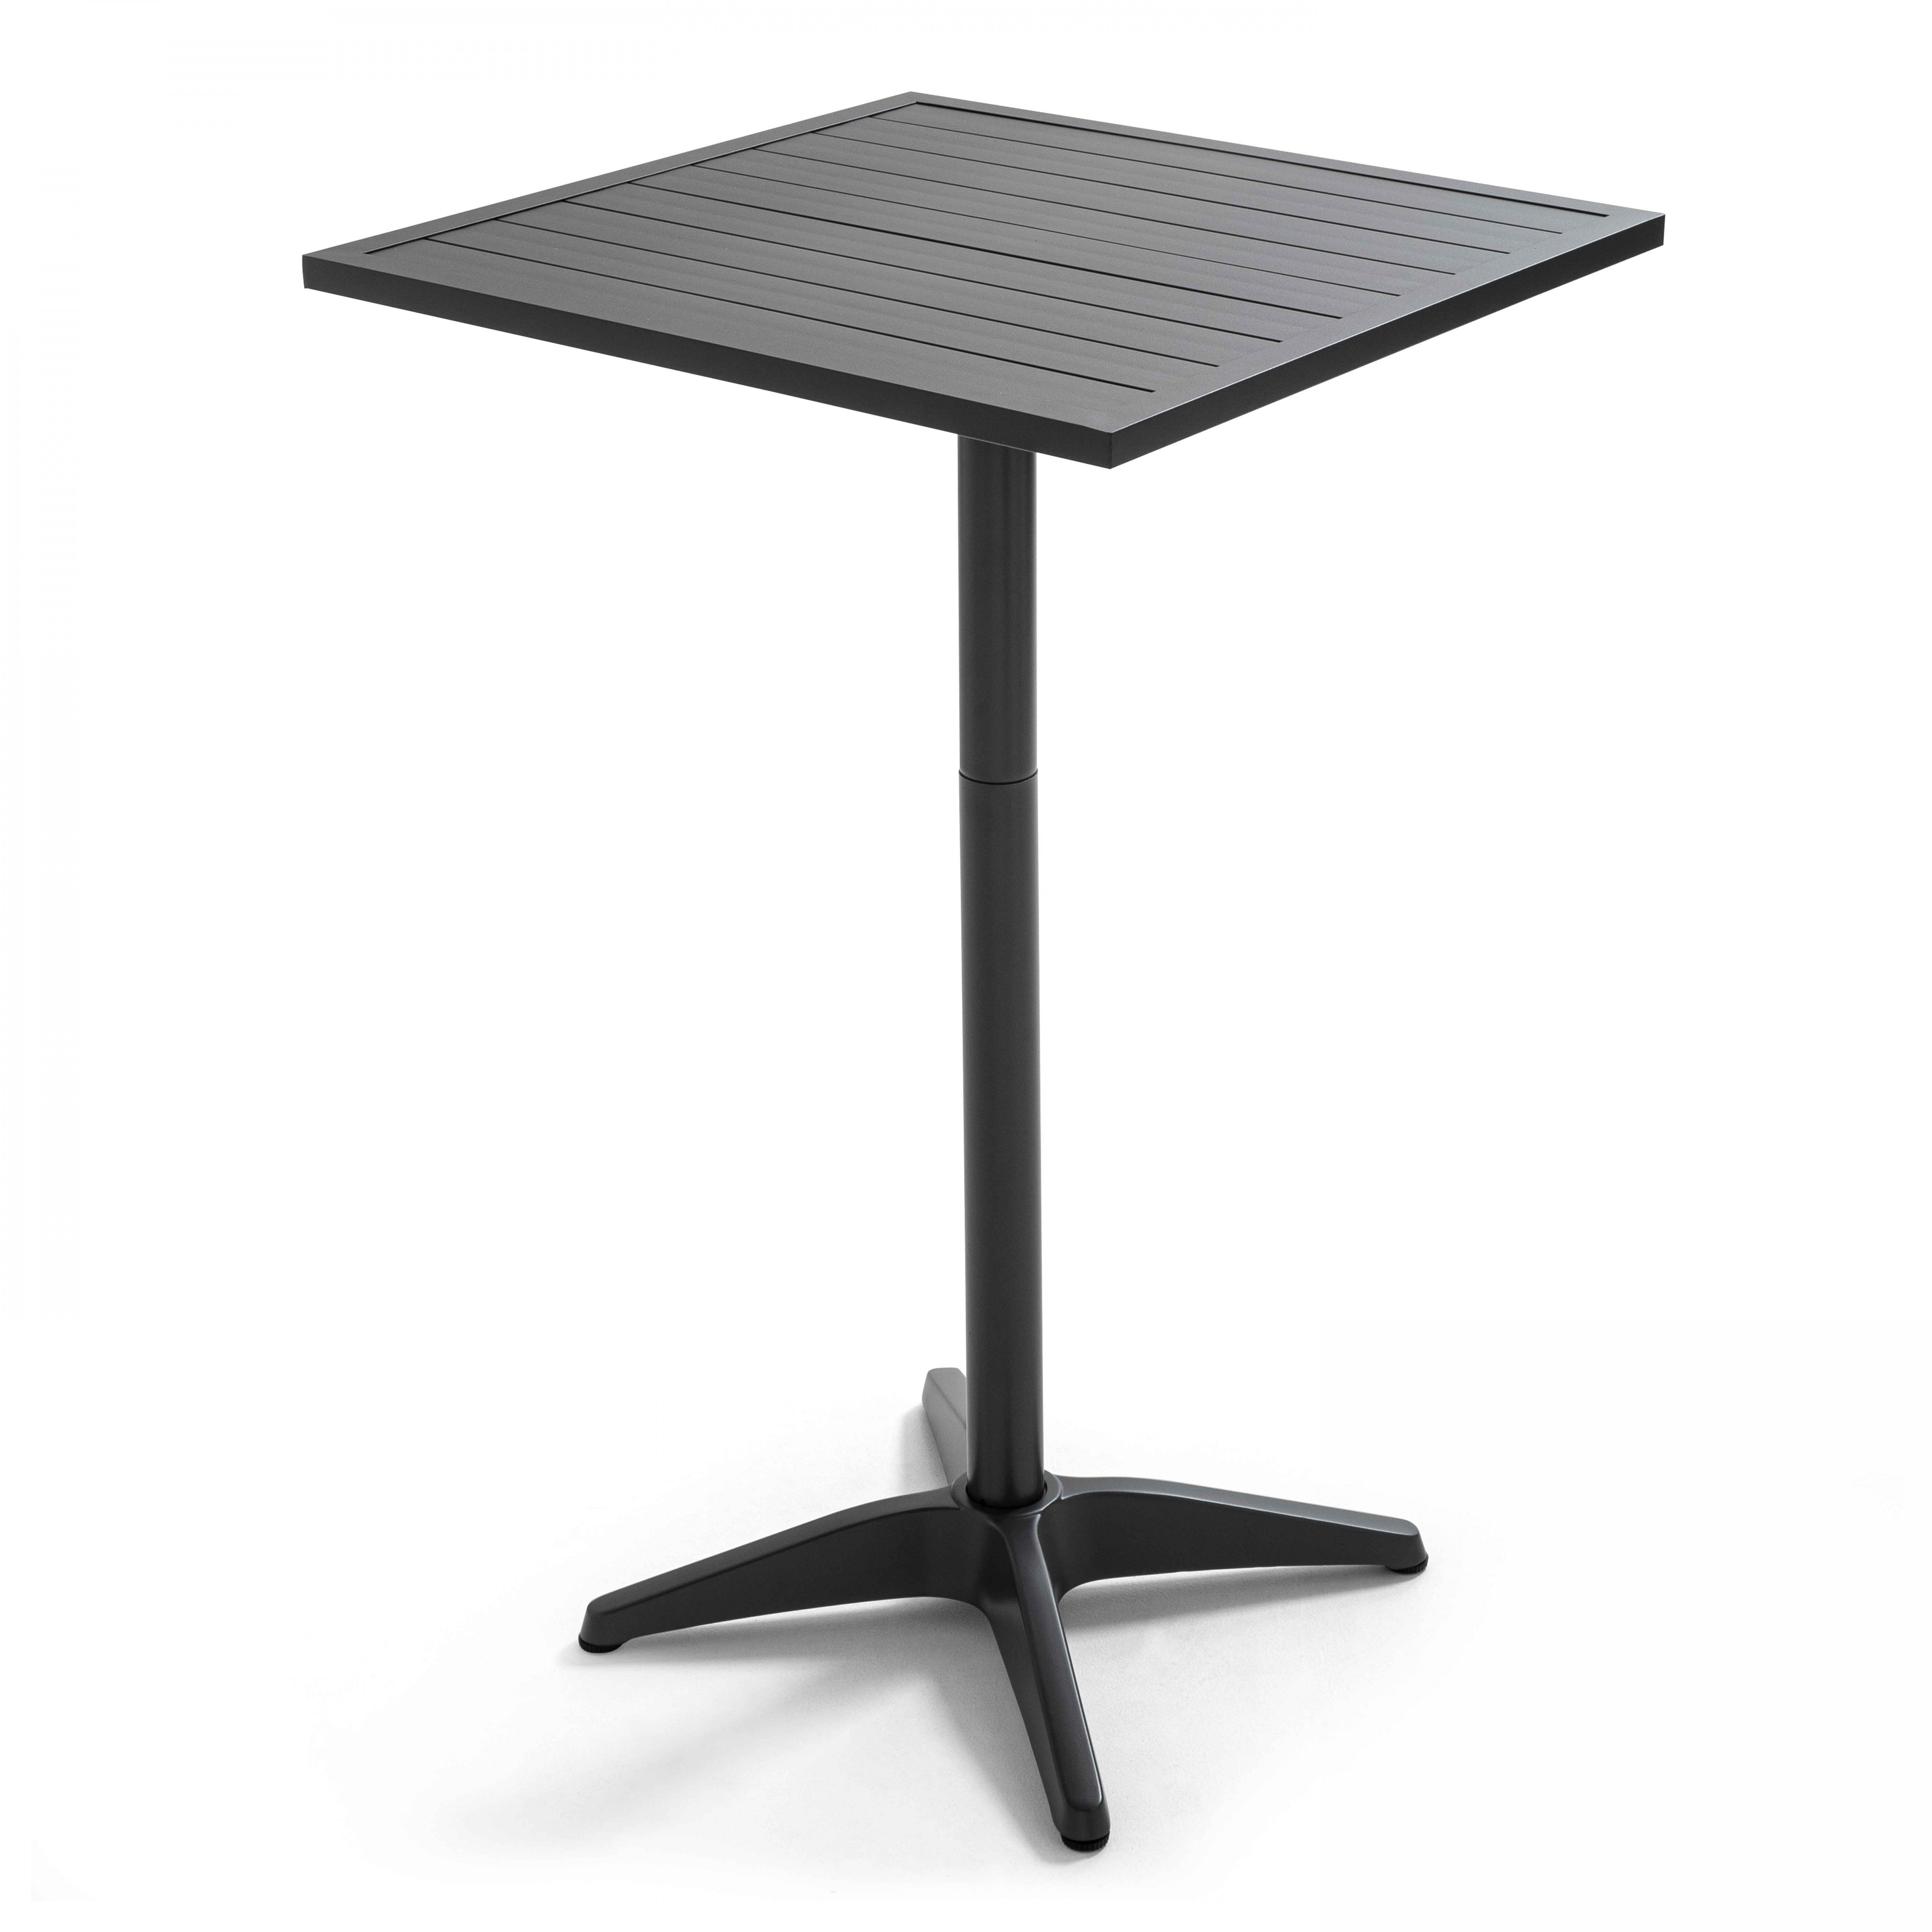 Table haute mange debout (60 x 60 x 110 cm) en aluminium gris